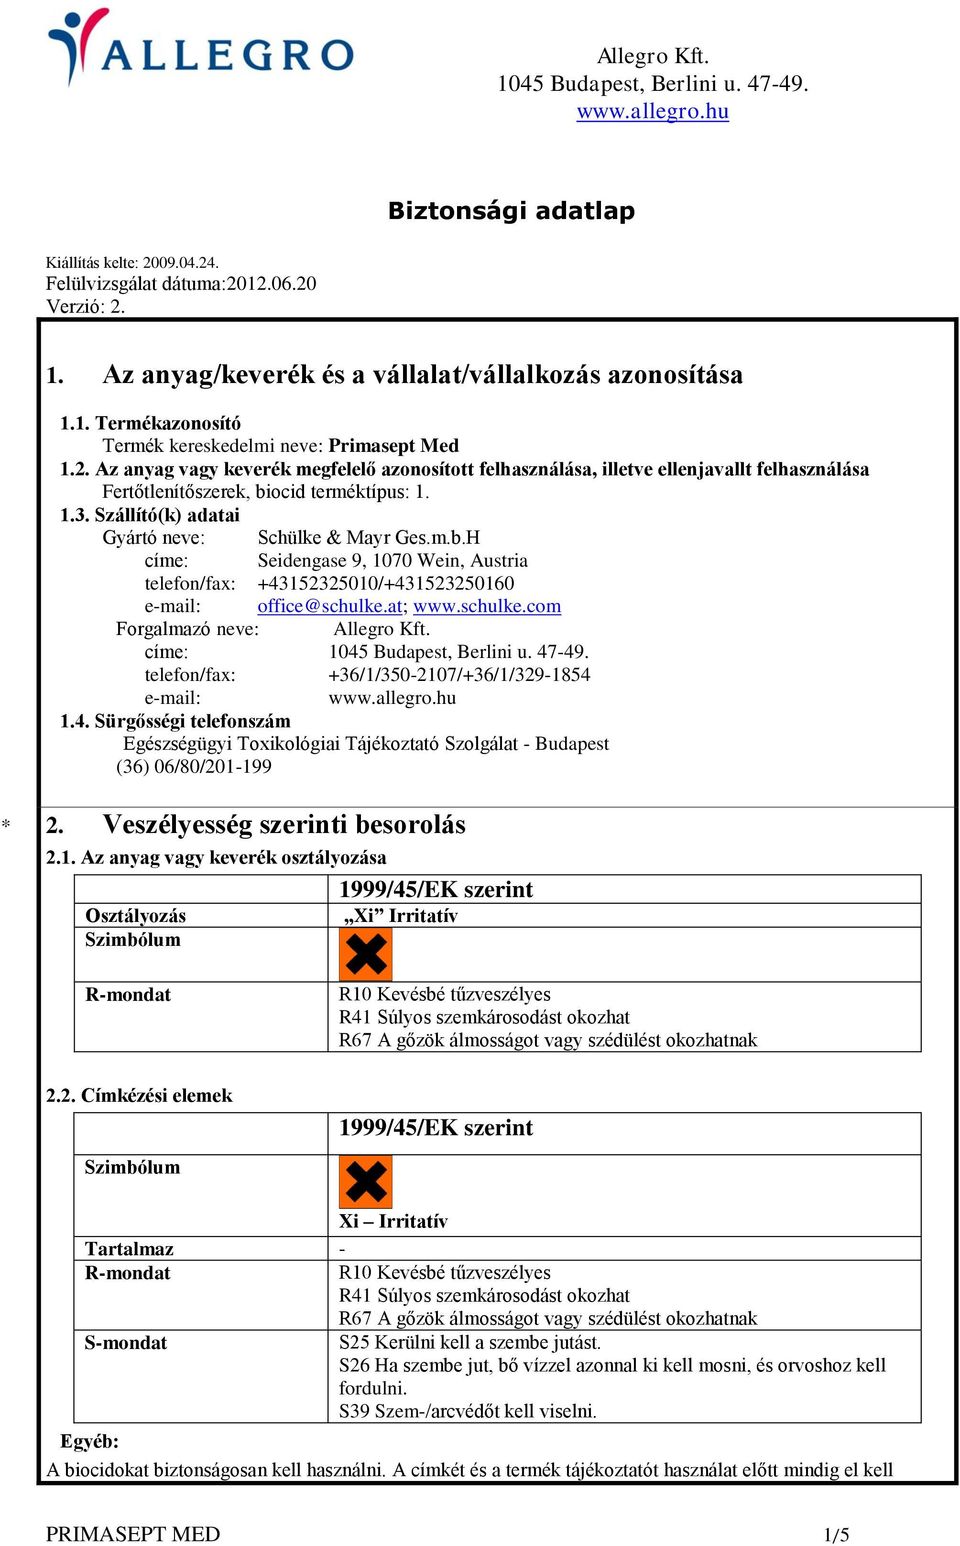 ocid terméktípus: 1. 1.3. Szállító(k) adatai Gyártó neve: Schülke & Mayr Ges.m.b.H címe: Seidengase 9, 1070 Wein, Austria telefon/fax: +43152325010/+431523250160 e-mail: office@schulke.at; www.